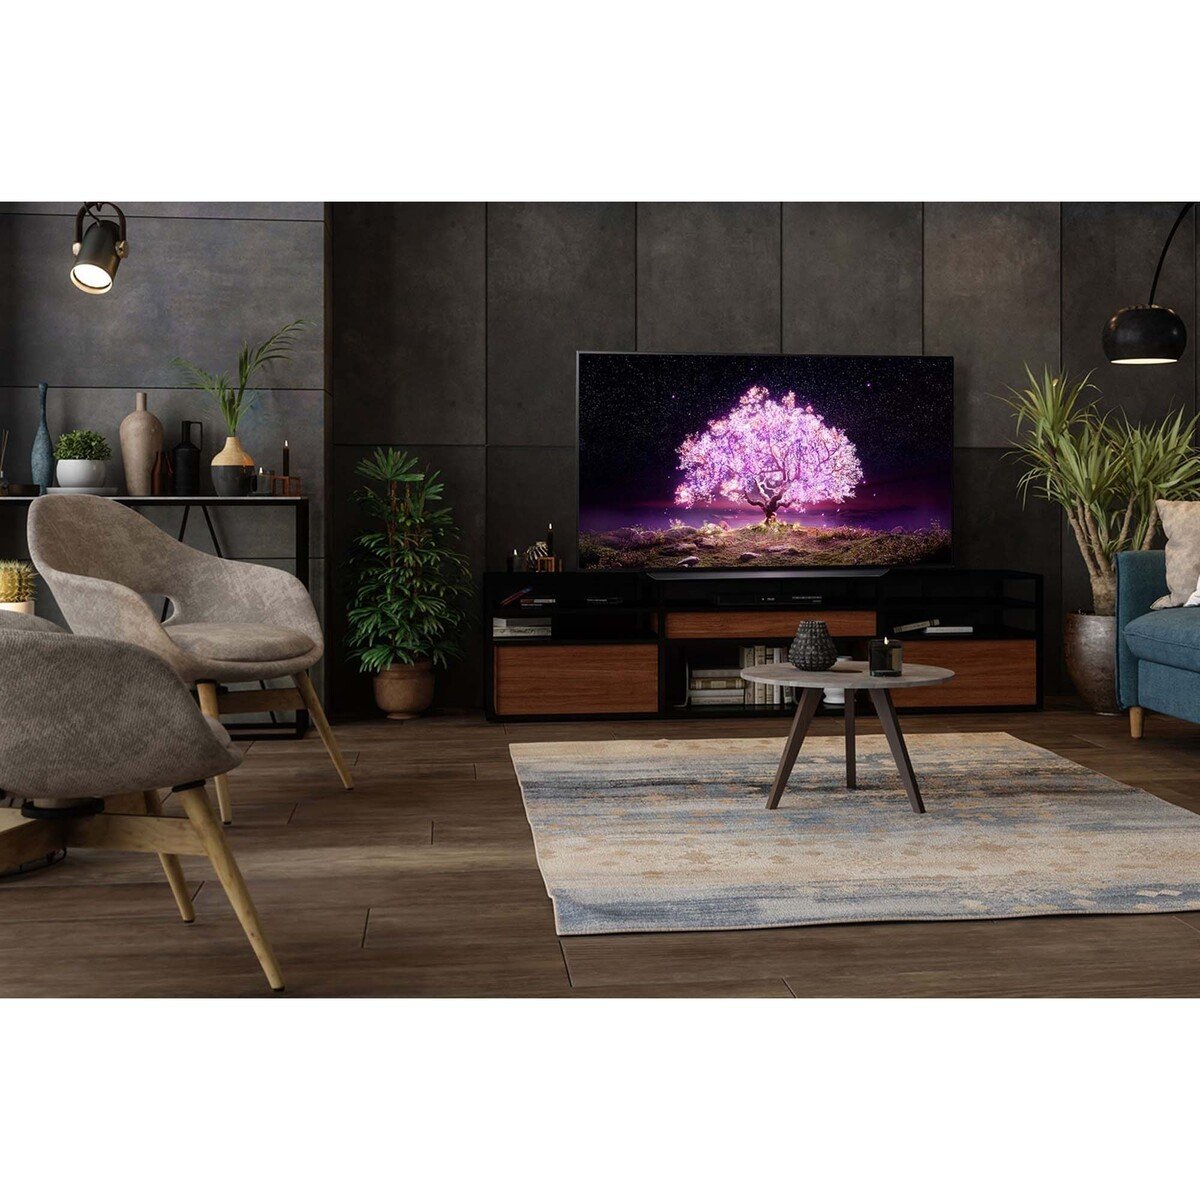 ال جي تلفزيون ذكي  OLED مقاس 55 بوصة من سلسلة C1 تصميم شاشة سينمائية 4K Cinema HDR بنظام webOS  مع خاصية تعتيم ThinQ AI Pixel